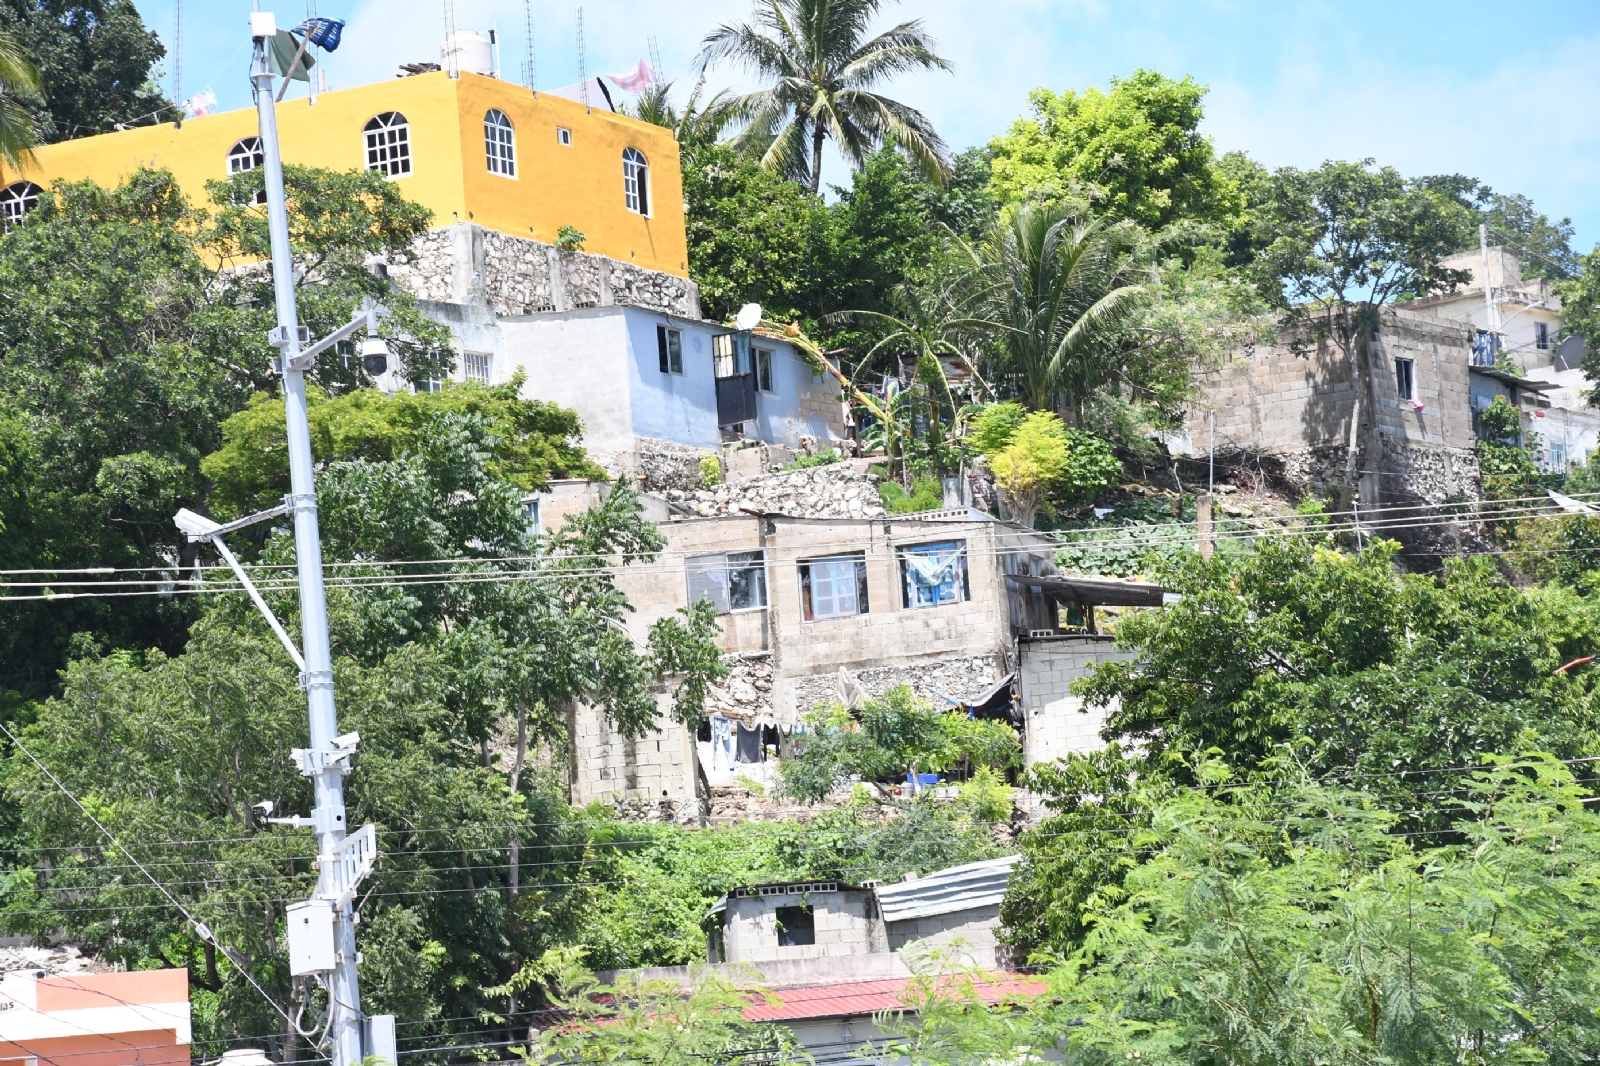 Robos a casa habitación, el delito con más denuncias en Campeche durante el 2022